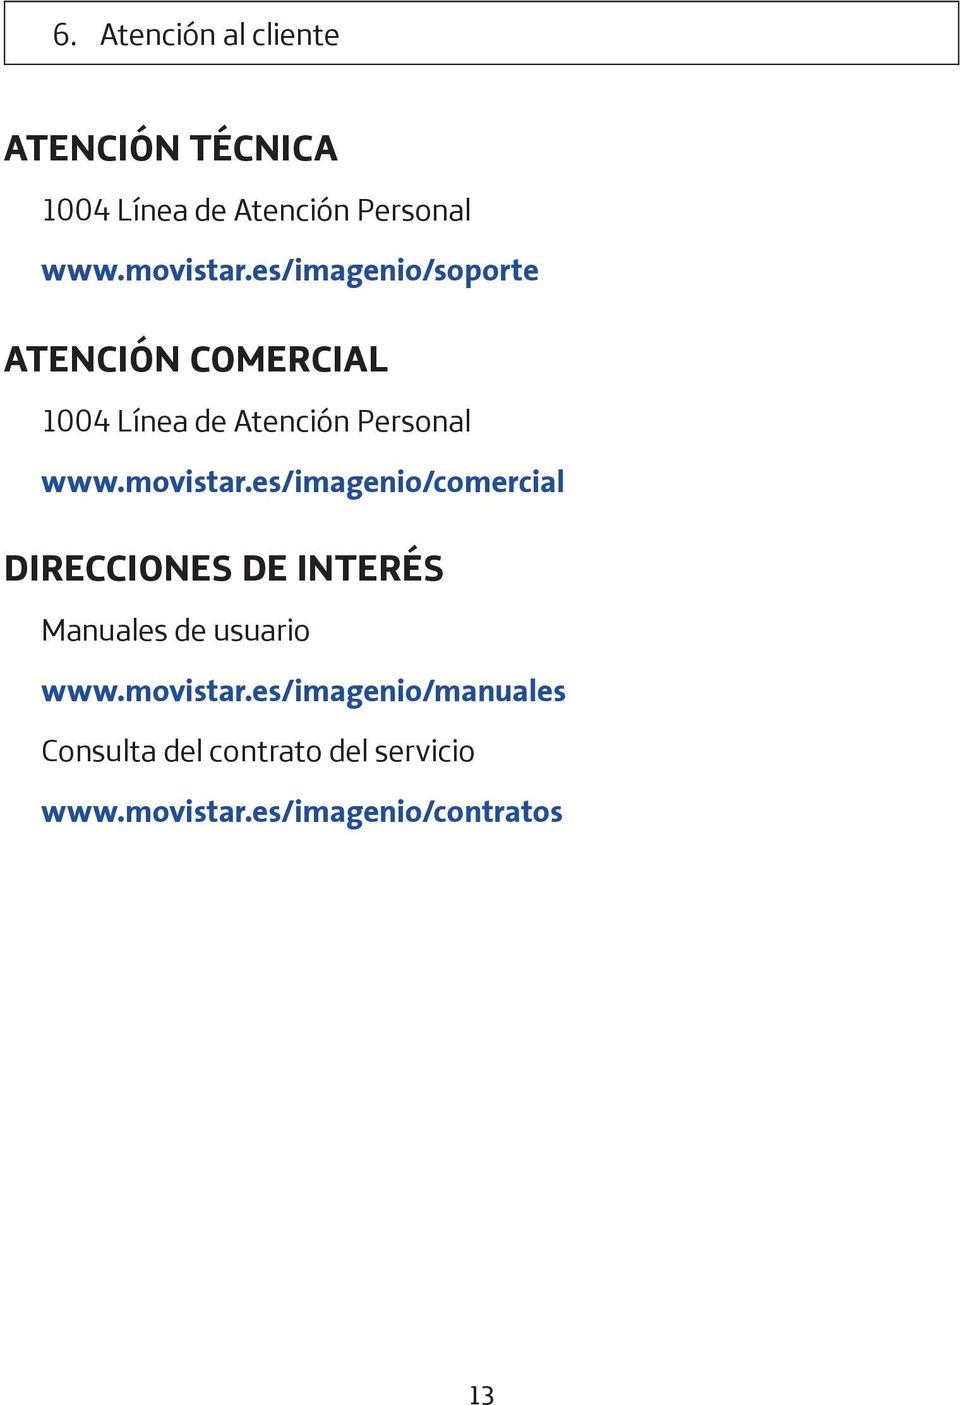 es/imagenio/comercial DIRECCIONES DE INTERÉS Manuales de usuario www.movistar.